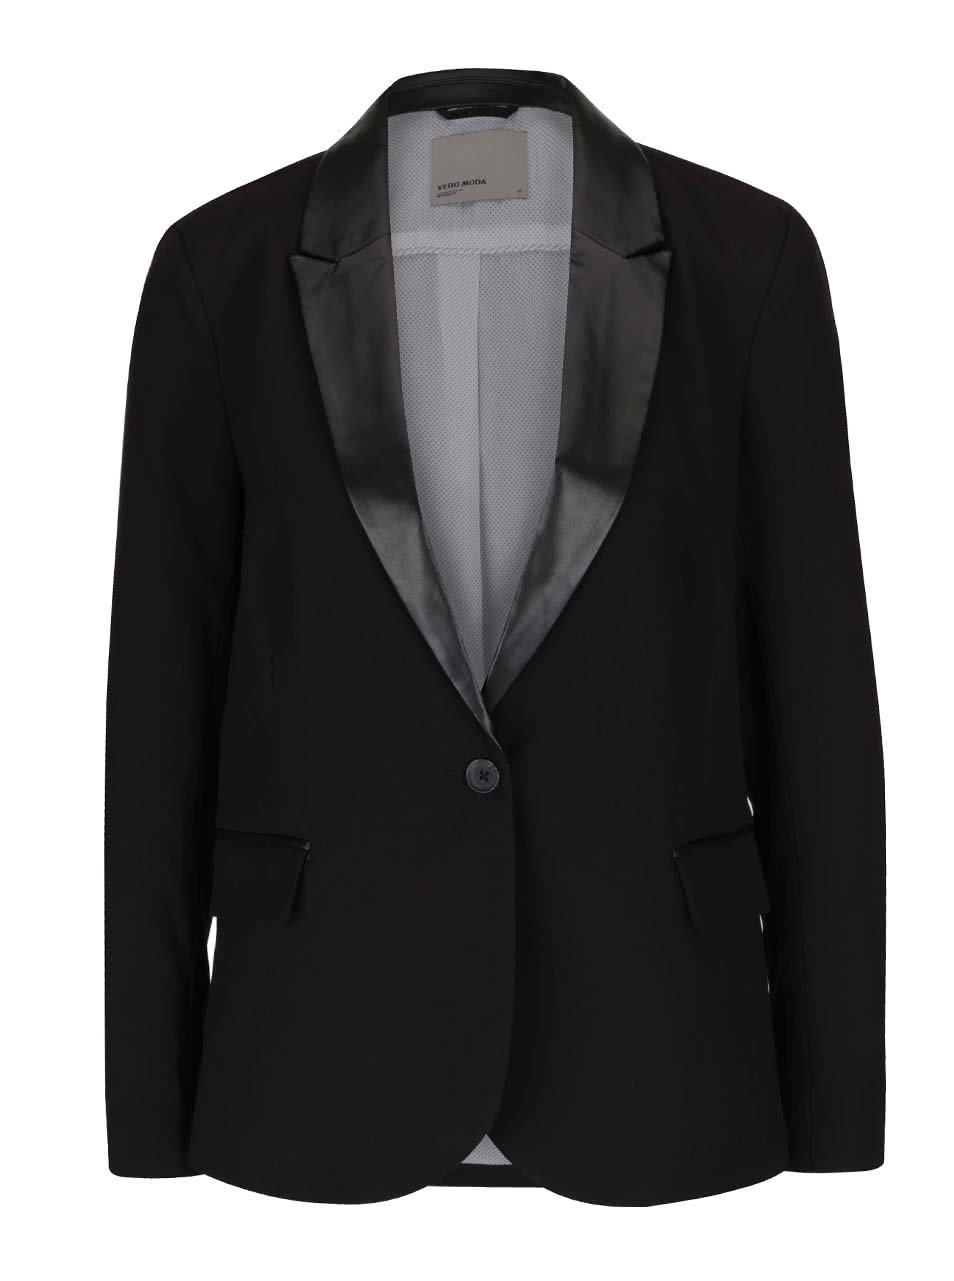 Černé sako s koženkovými detaily Vero Moda Scarlett